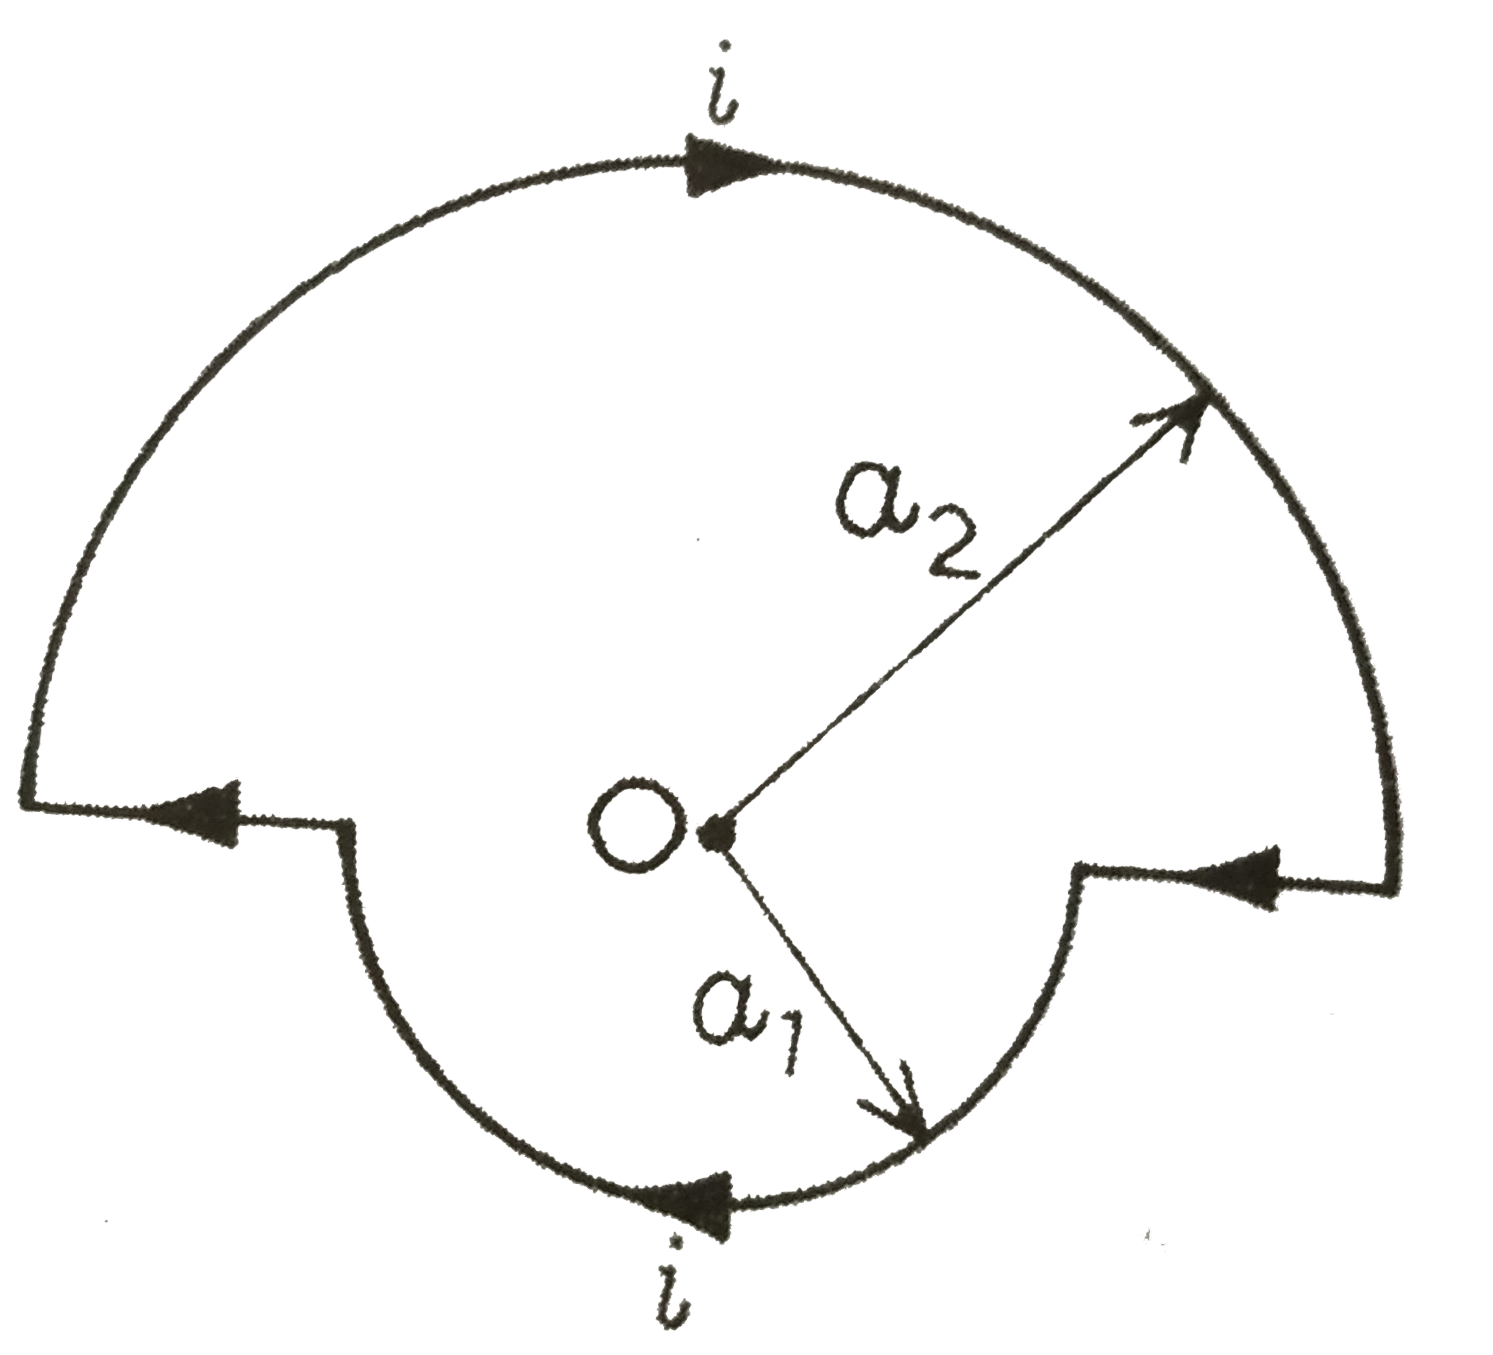 संग्लन चित्र में प्रदर्शित मुड़े तार में i ऐम्पियर धारा है । बिंदु O पर चुंबकीय क्षेत्र का मान व दिशा ज्ञात कीजिए ।